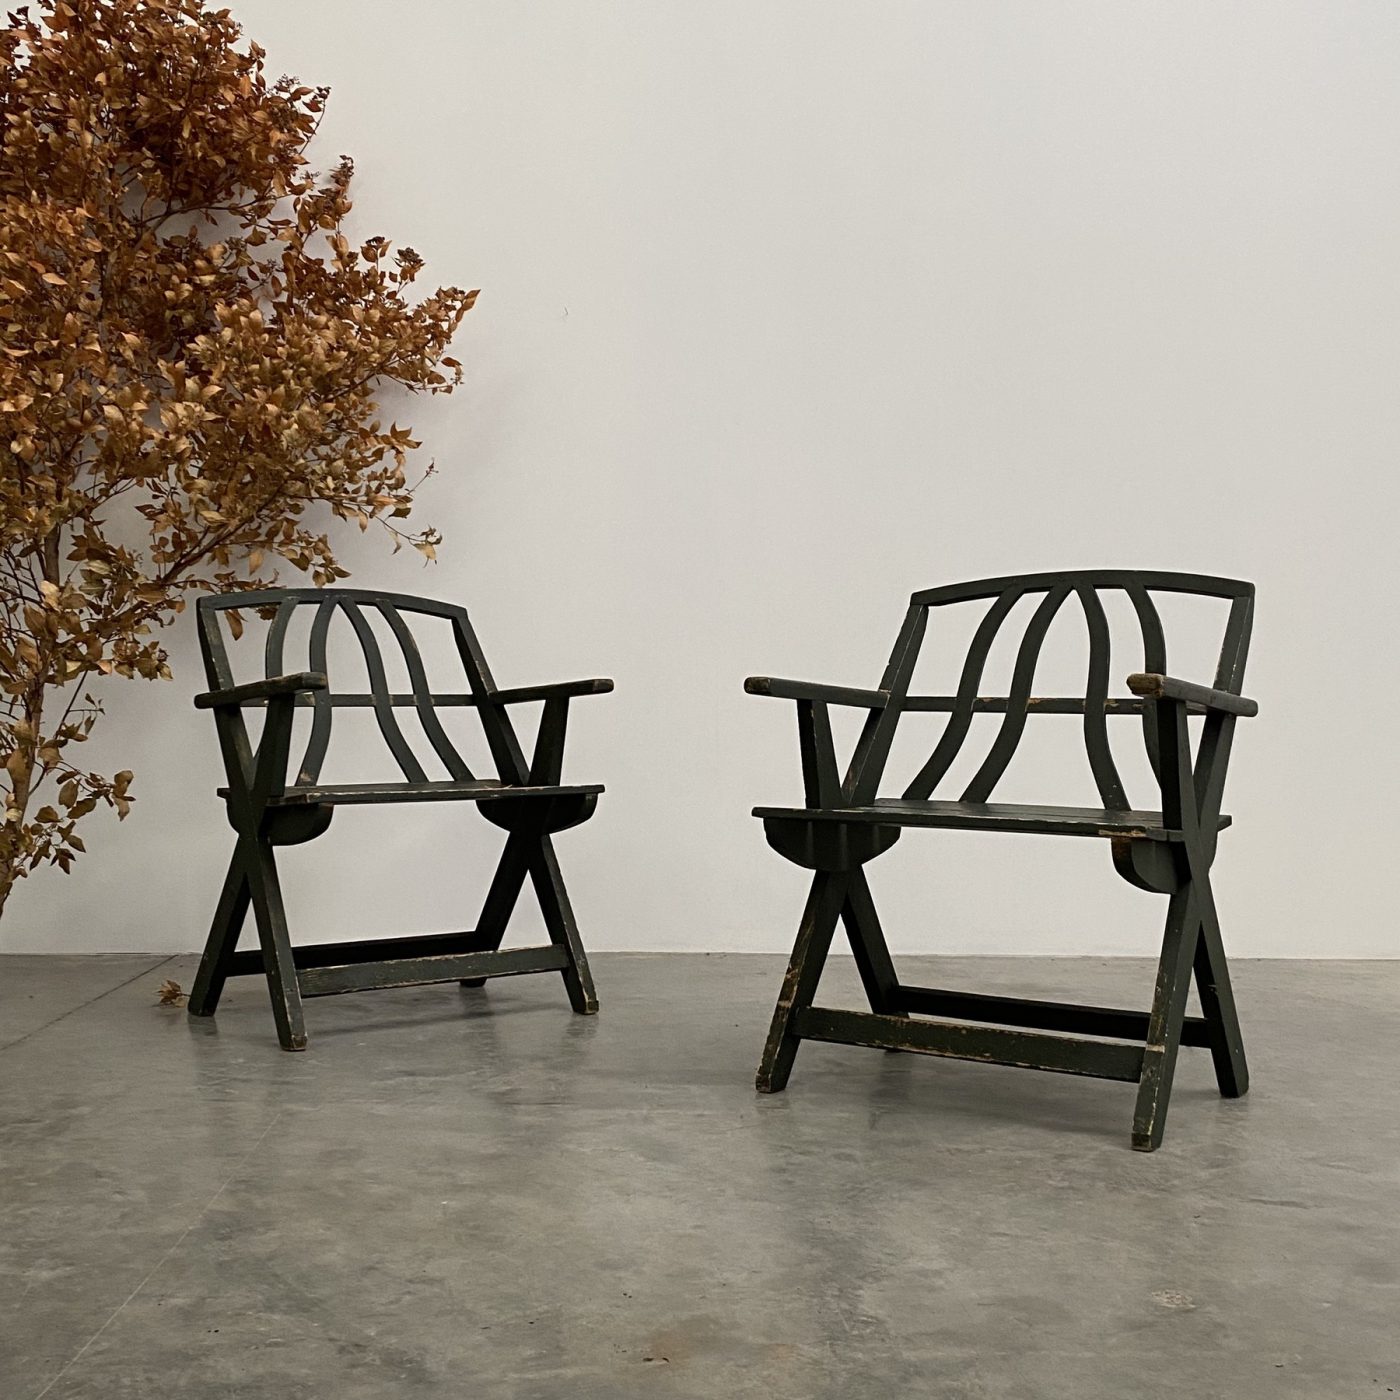 objet-vagabond-wooden-chairs0007